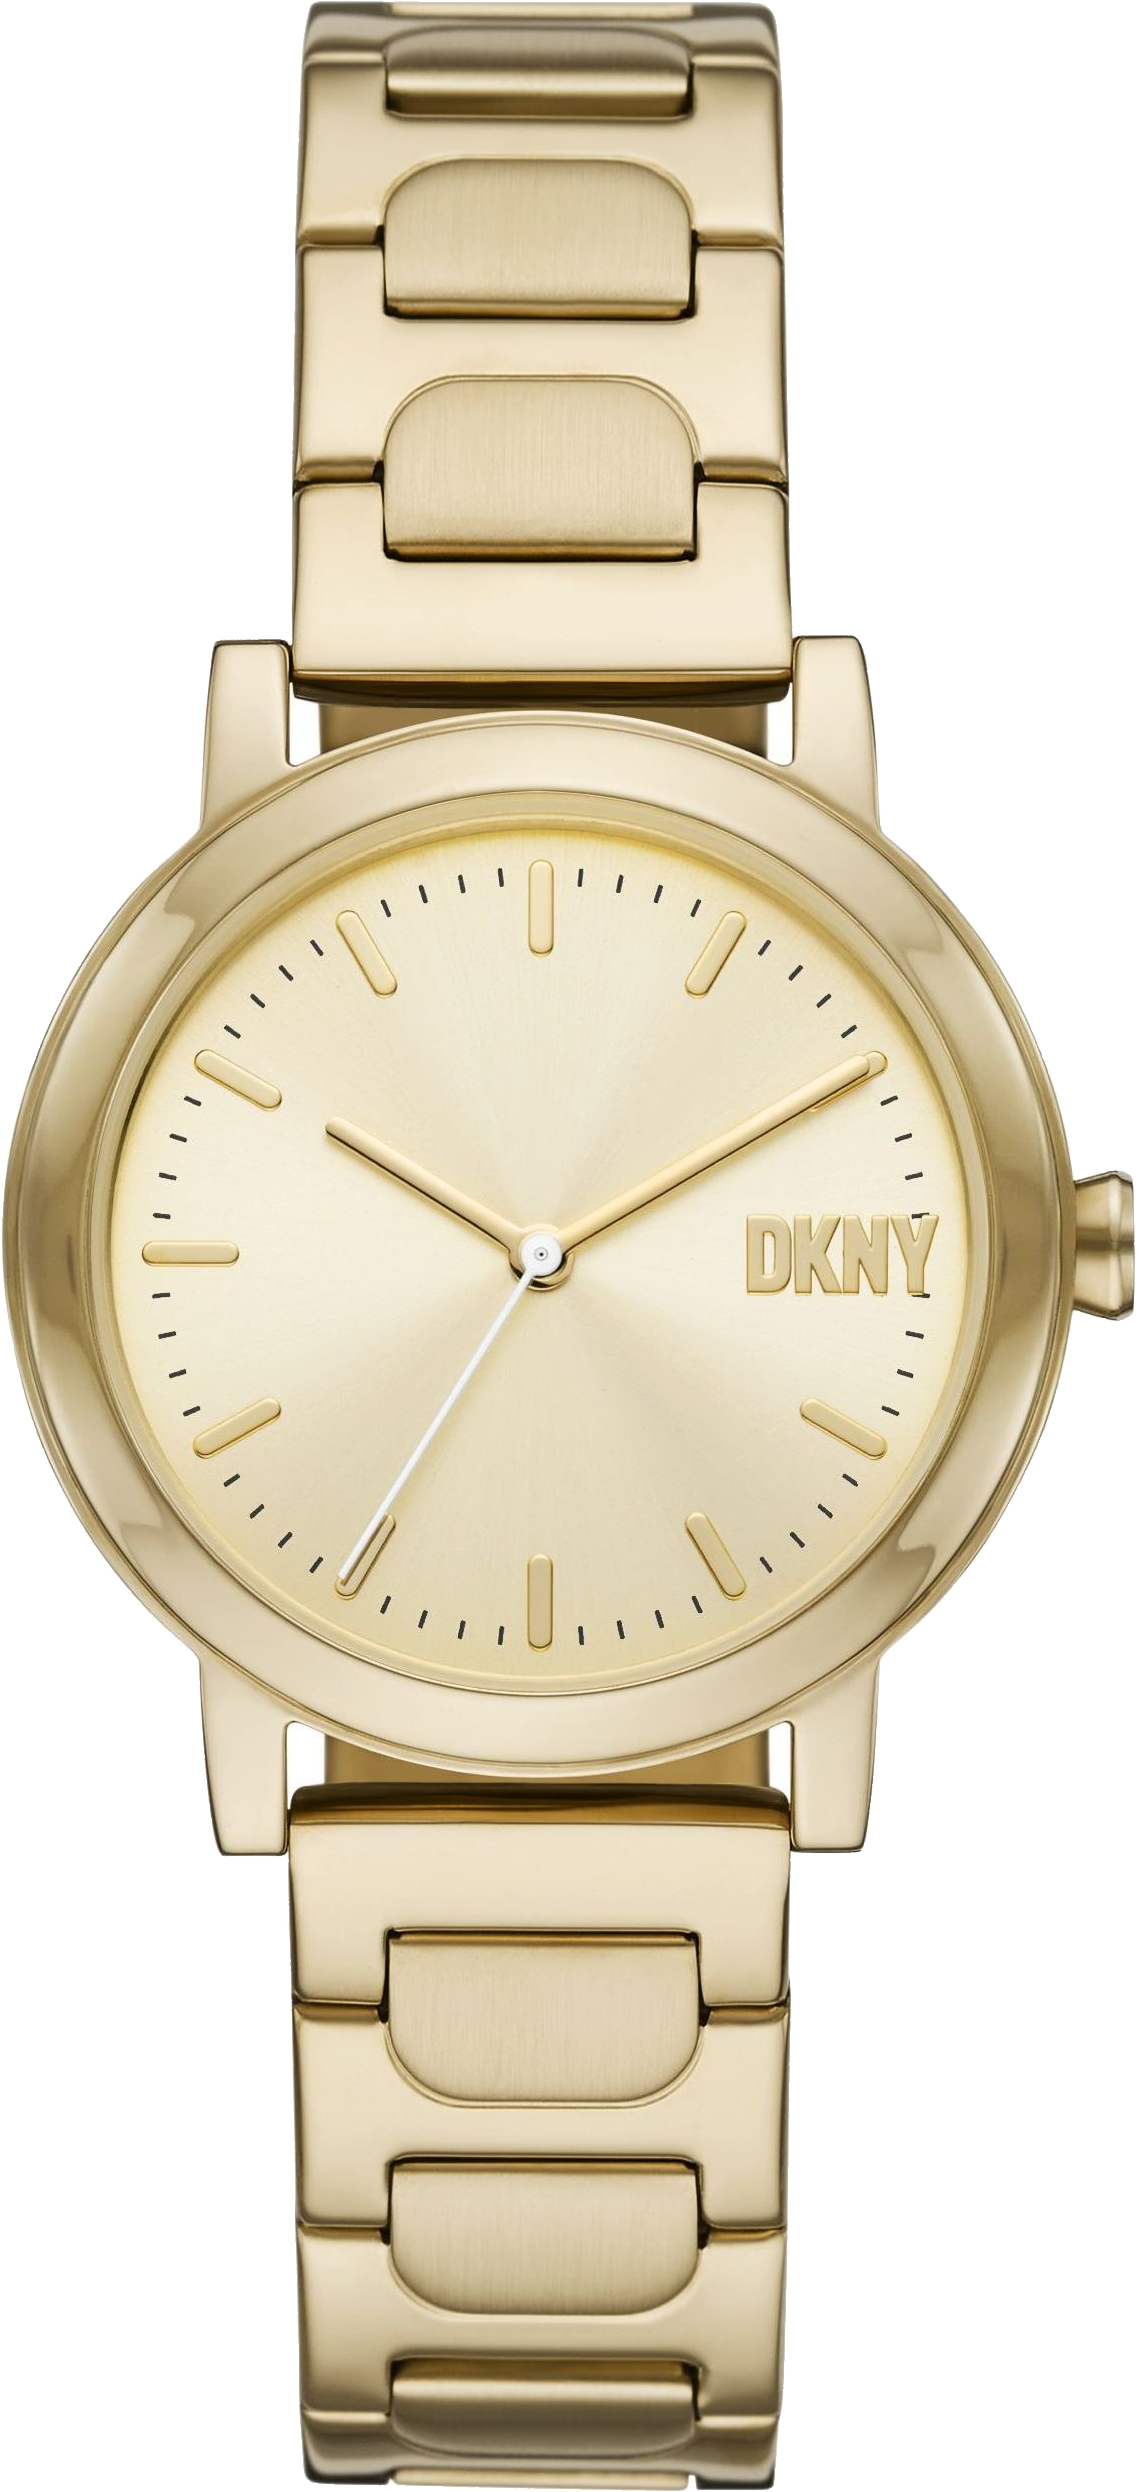 Купить часы DKNY NY6651 по низкой цене 20 990 руб. с доставкой по Санкт-Пет...